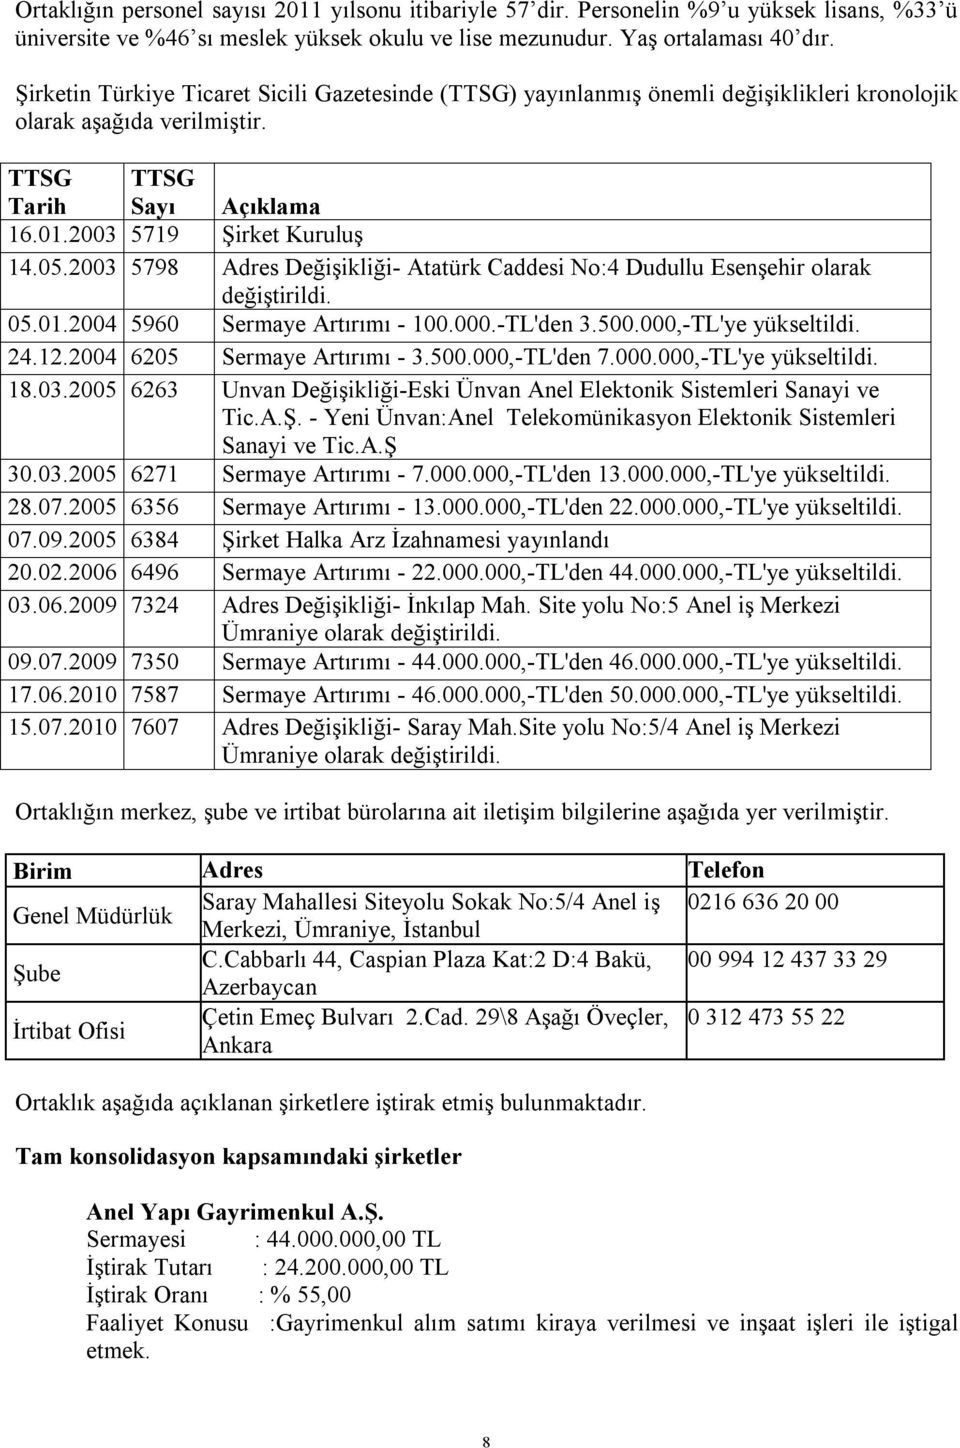 2003 5798 Adres Değişikliği- Atatürk Caddesi No:4 Dudullu Esenşehir olarak değiştirildi. 05.01.2004 5960 Sermaye Artırımı - 100.000.-TL'den 3.500.000,-TL'ye yükseltildi. 24.12.